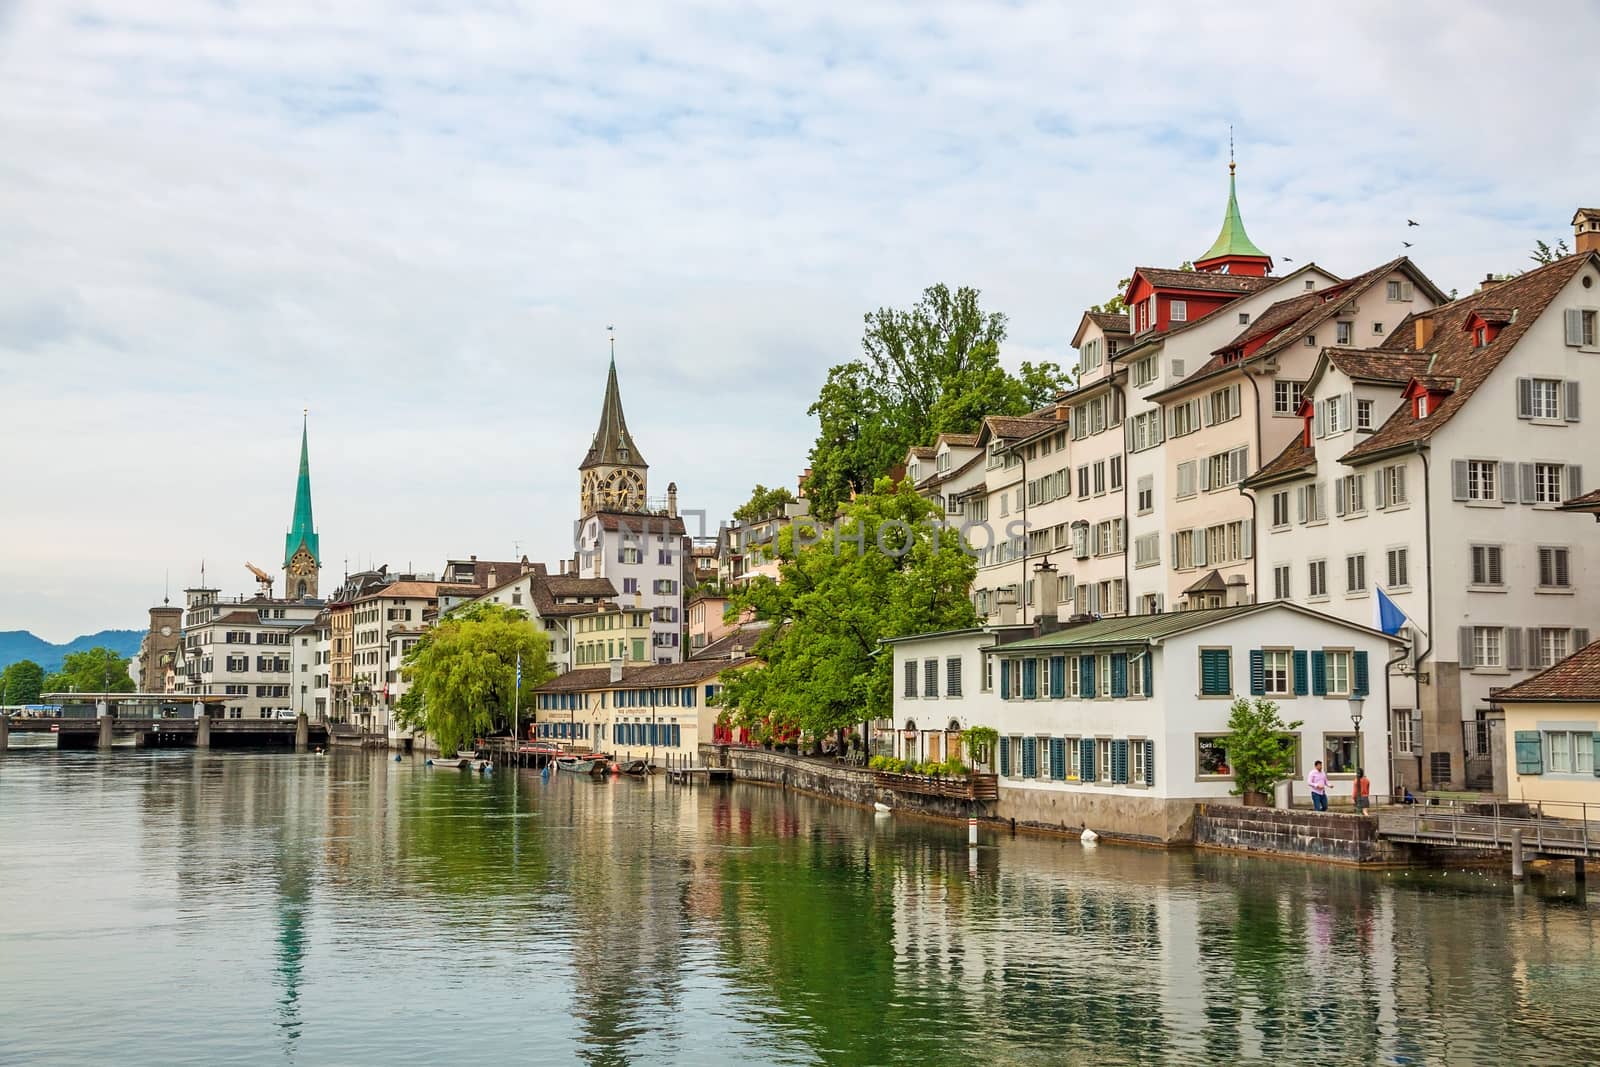 Zurich, Switzerland - June 10, 2017: Zurich downtown, with Fraumunster and St. Peter. View towards Lindenhof, Schipfe street, river Limmat in front.